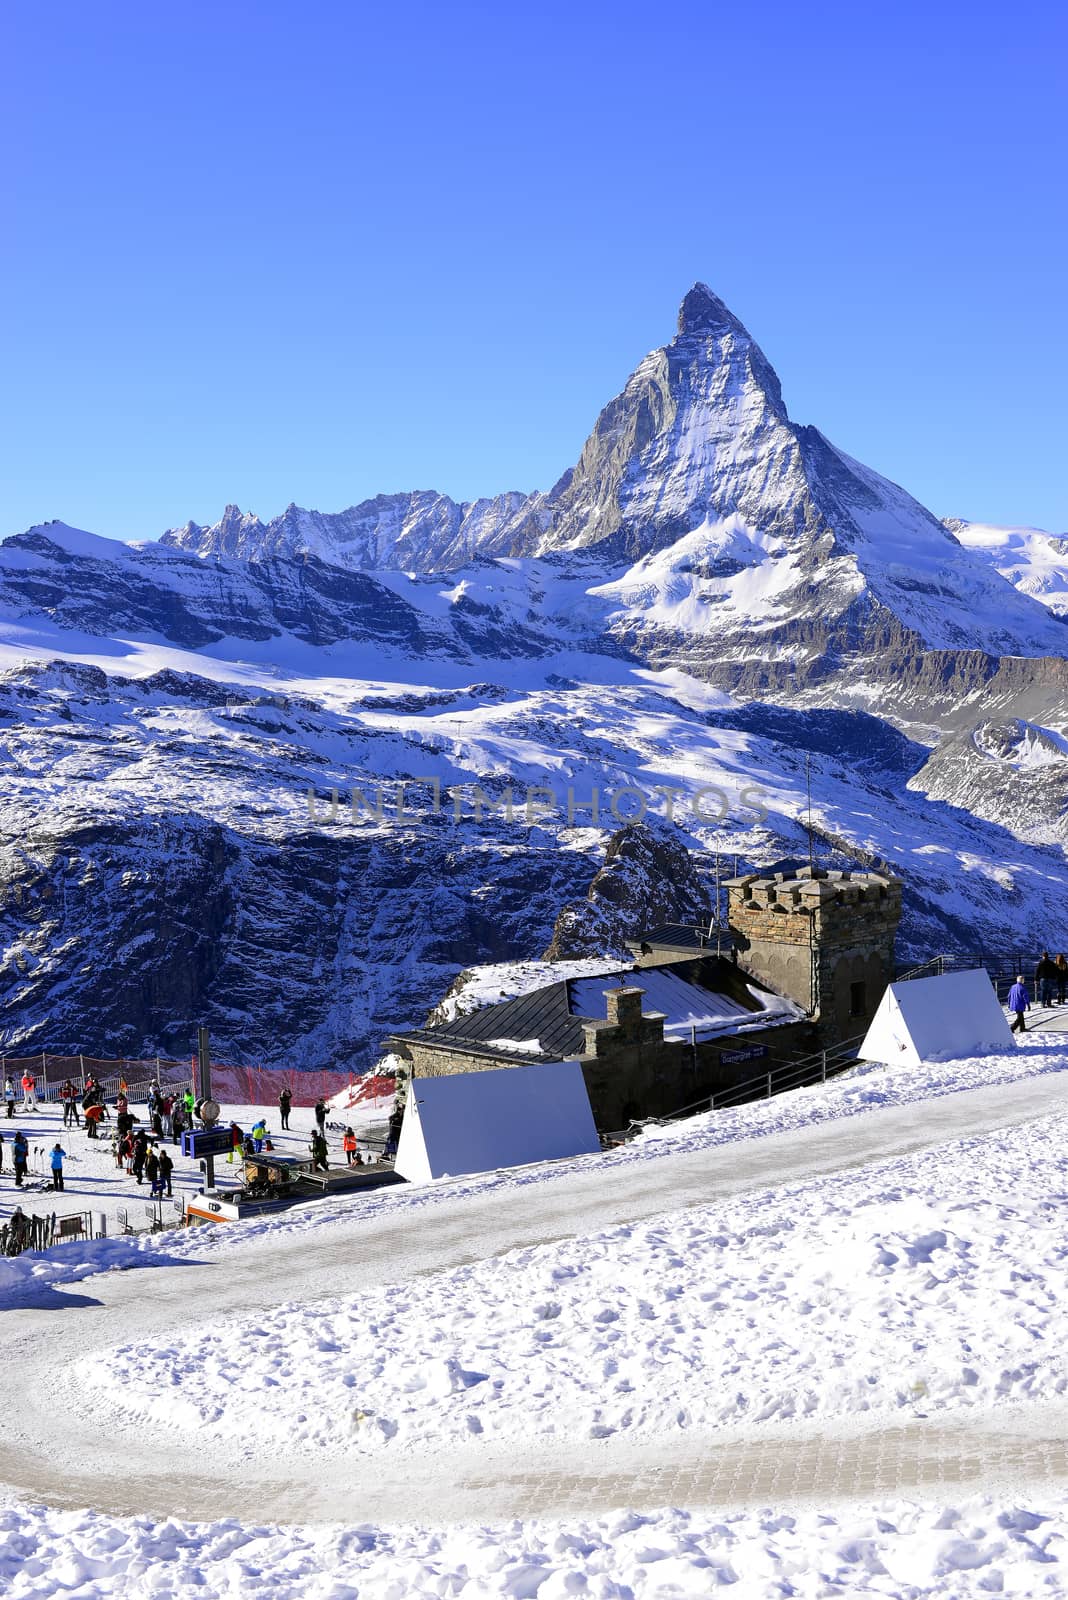 The most beautiful Swiss Alps, Matterhorn in Zermatt by gypsygraphy